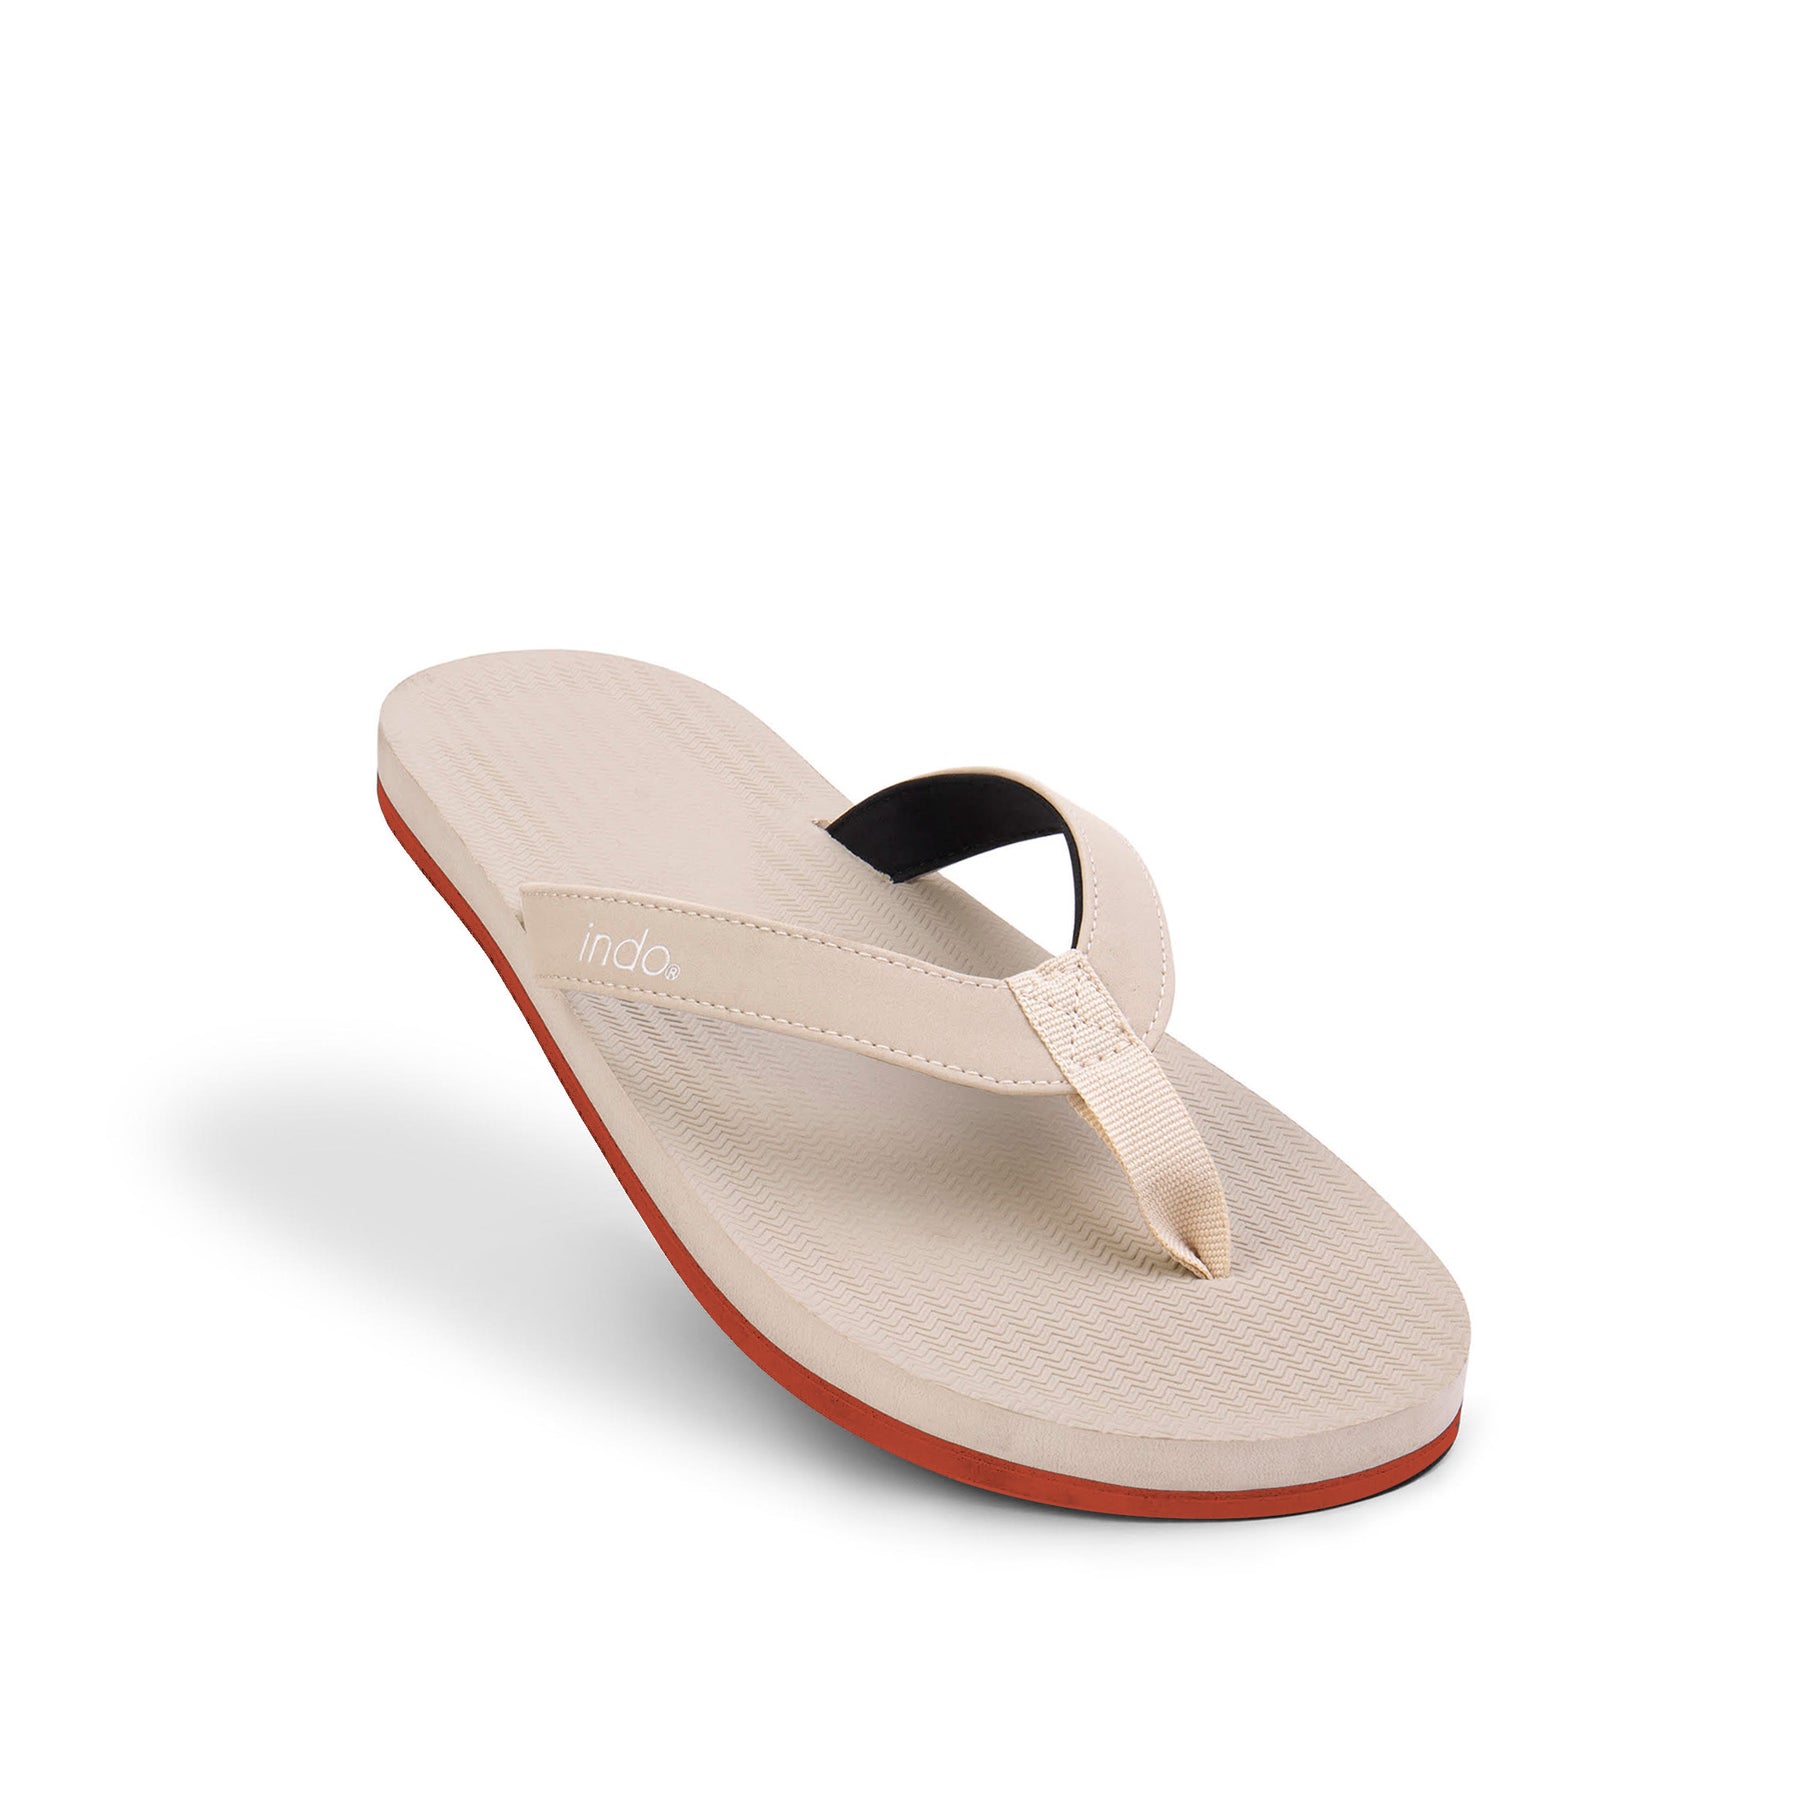 Men's Flip Flops Sneaker Sole - Sea Salt/Orange Sole